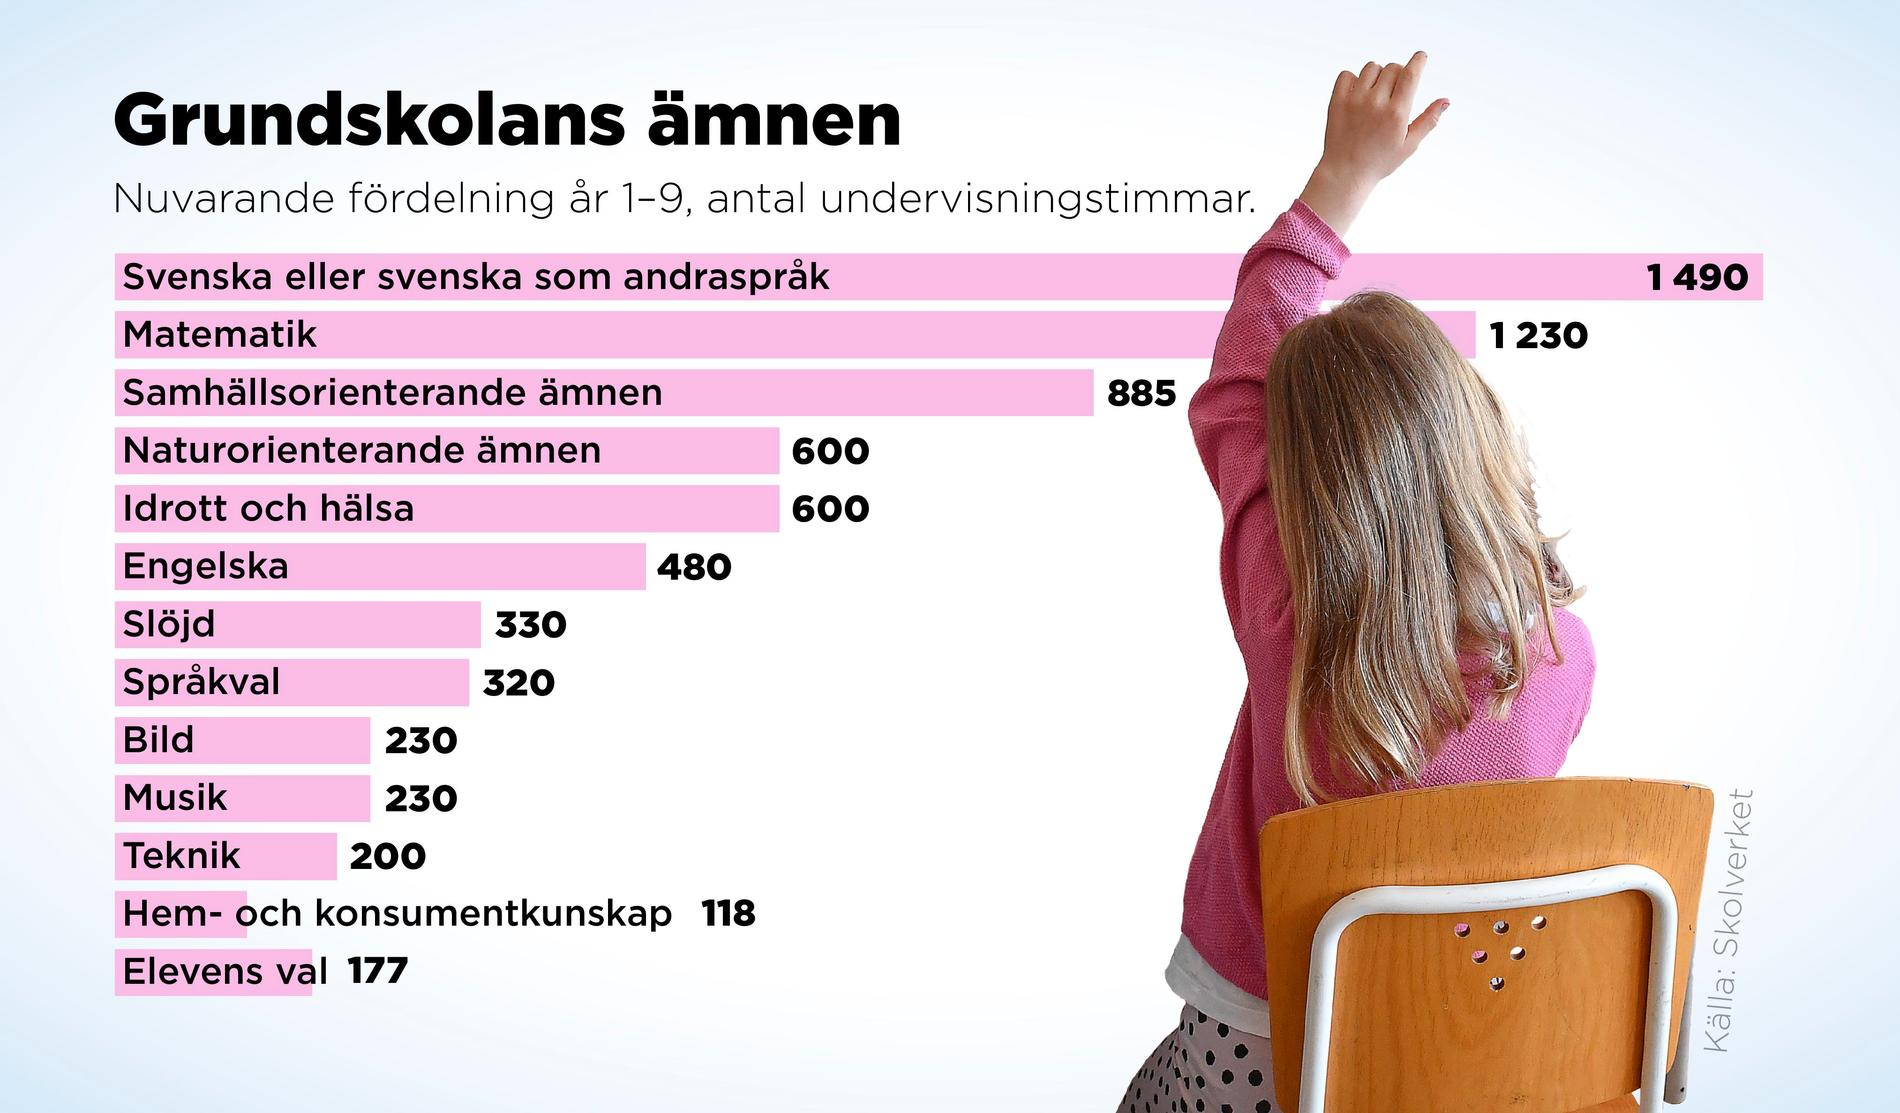 Nuvarande fördelning av grundskolans ämnen år 1–9. Det totala antalet garanterade undervisningstimmar är 6 890.